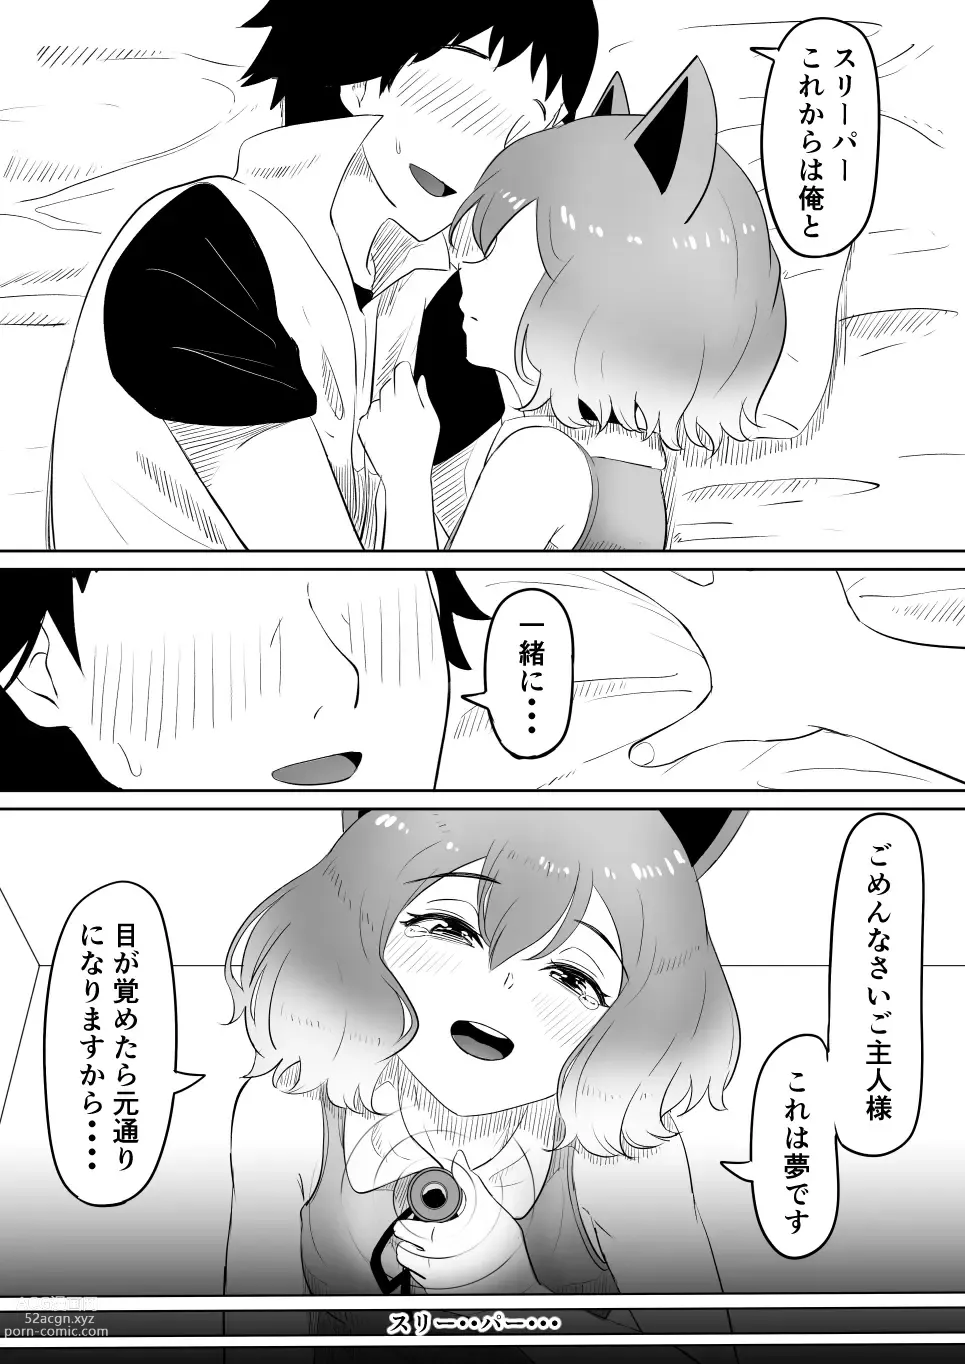 Page 32 of doujinshi Koi o Shita Sleeper-chan.